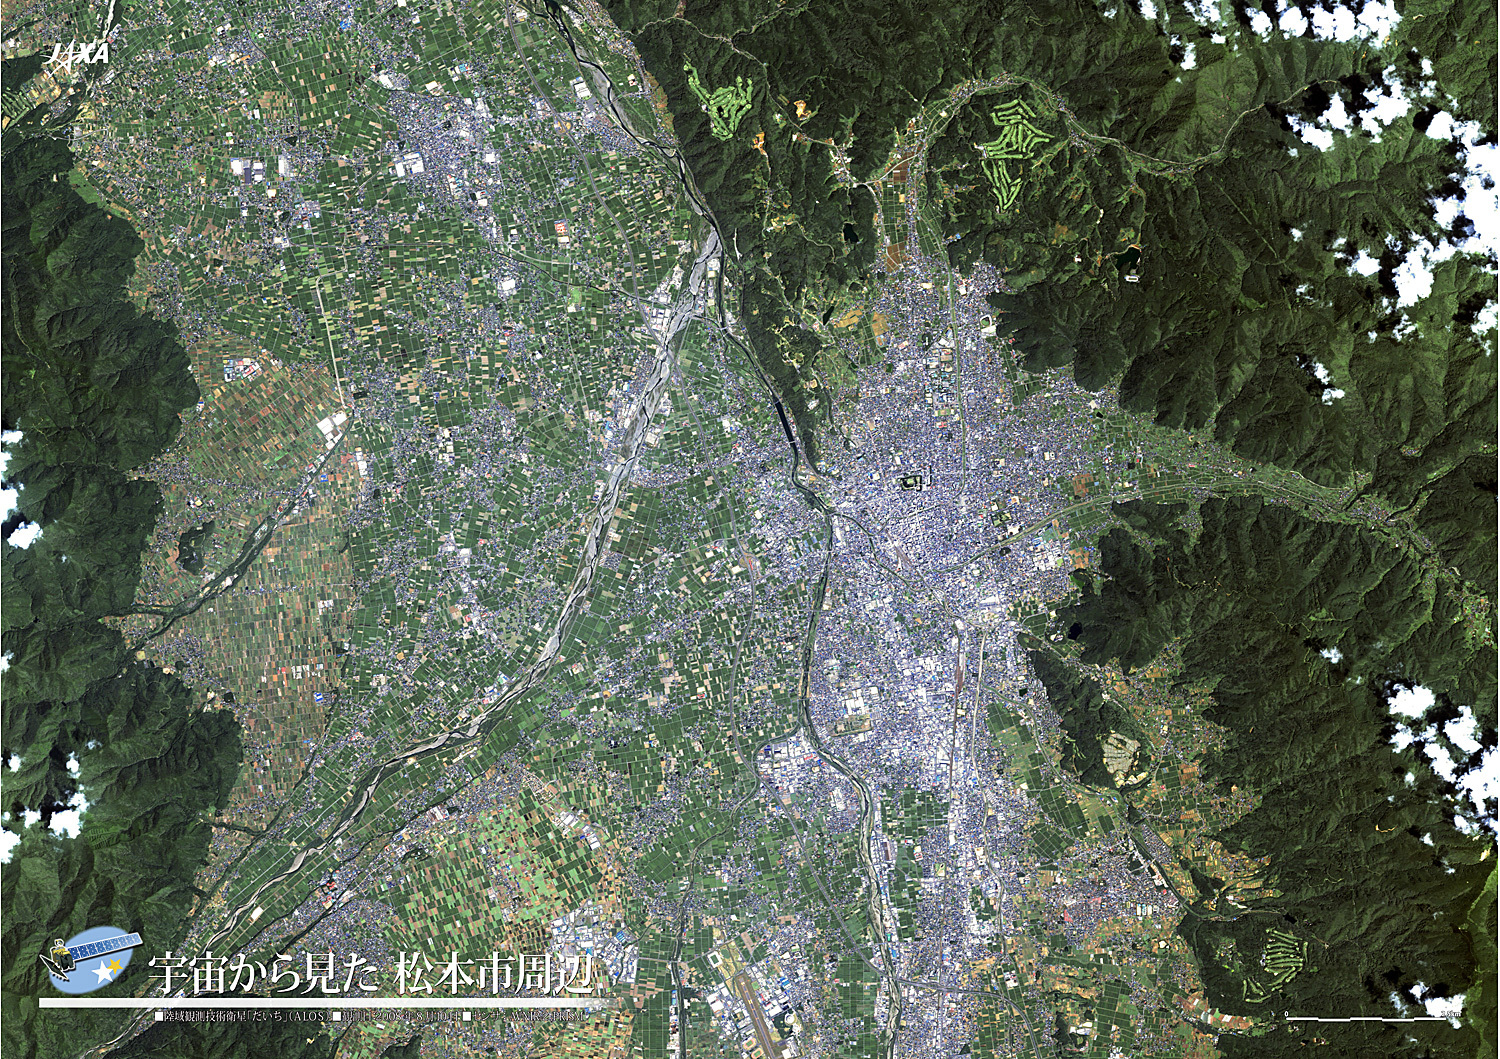 だいちから見た日本の都市 松本市周辺:衛星画像（ポスター仕上げ）